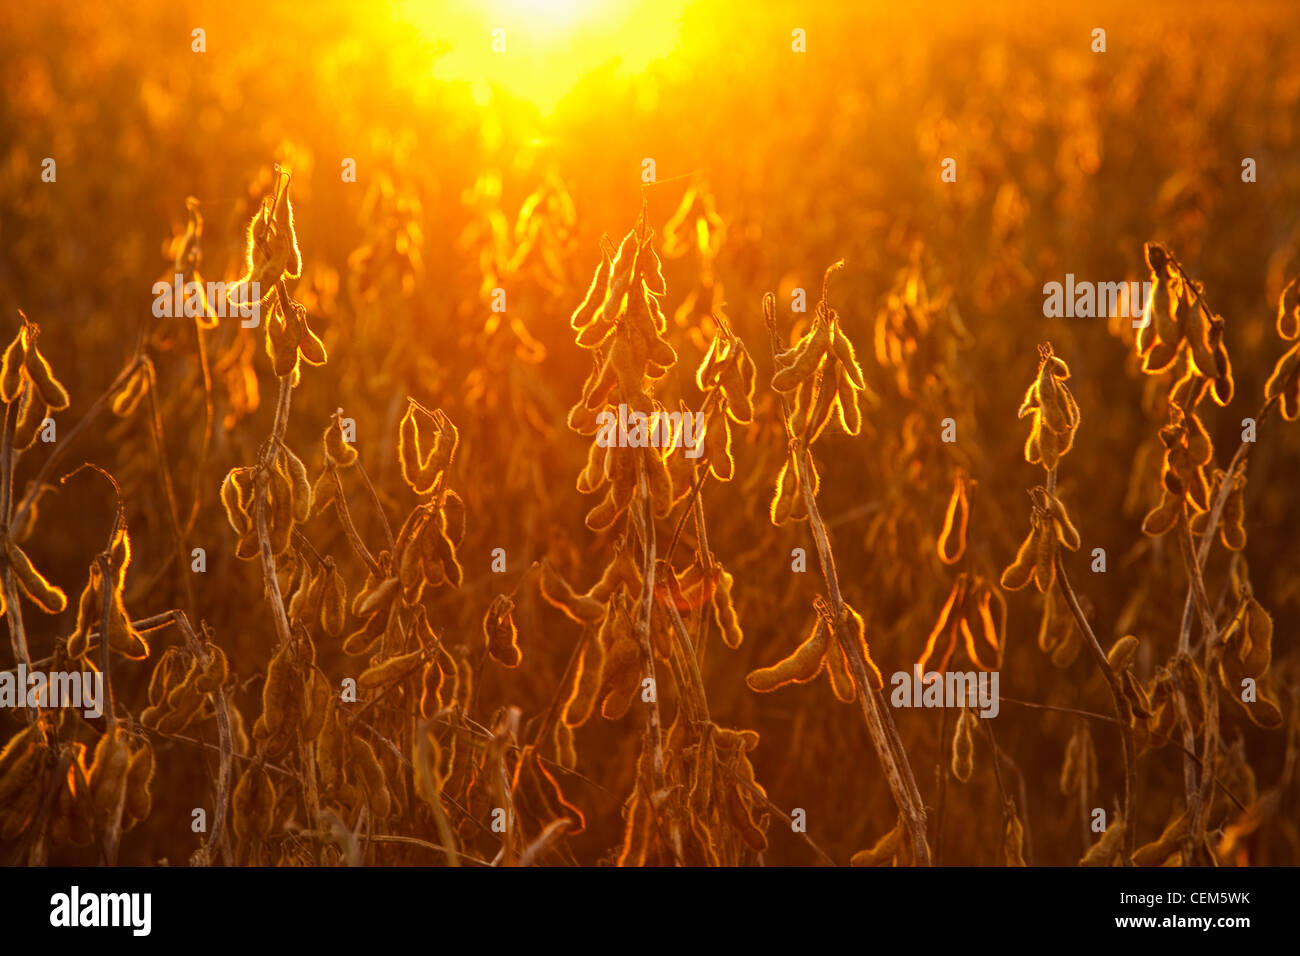 Landwirtschaft - Schoten reifen Ernte Bühne Sojabohnen an der Pflanze, Hintergrundbeleuchtung mit dem Sonnenuntergang / in der Nähe von Little Rock, Arkansas, USA. Stockfoto